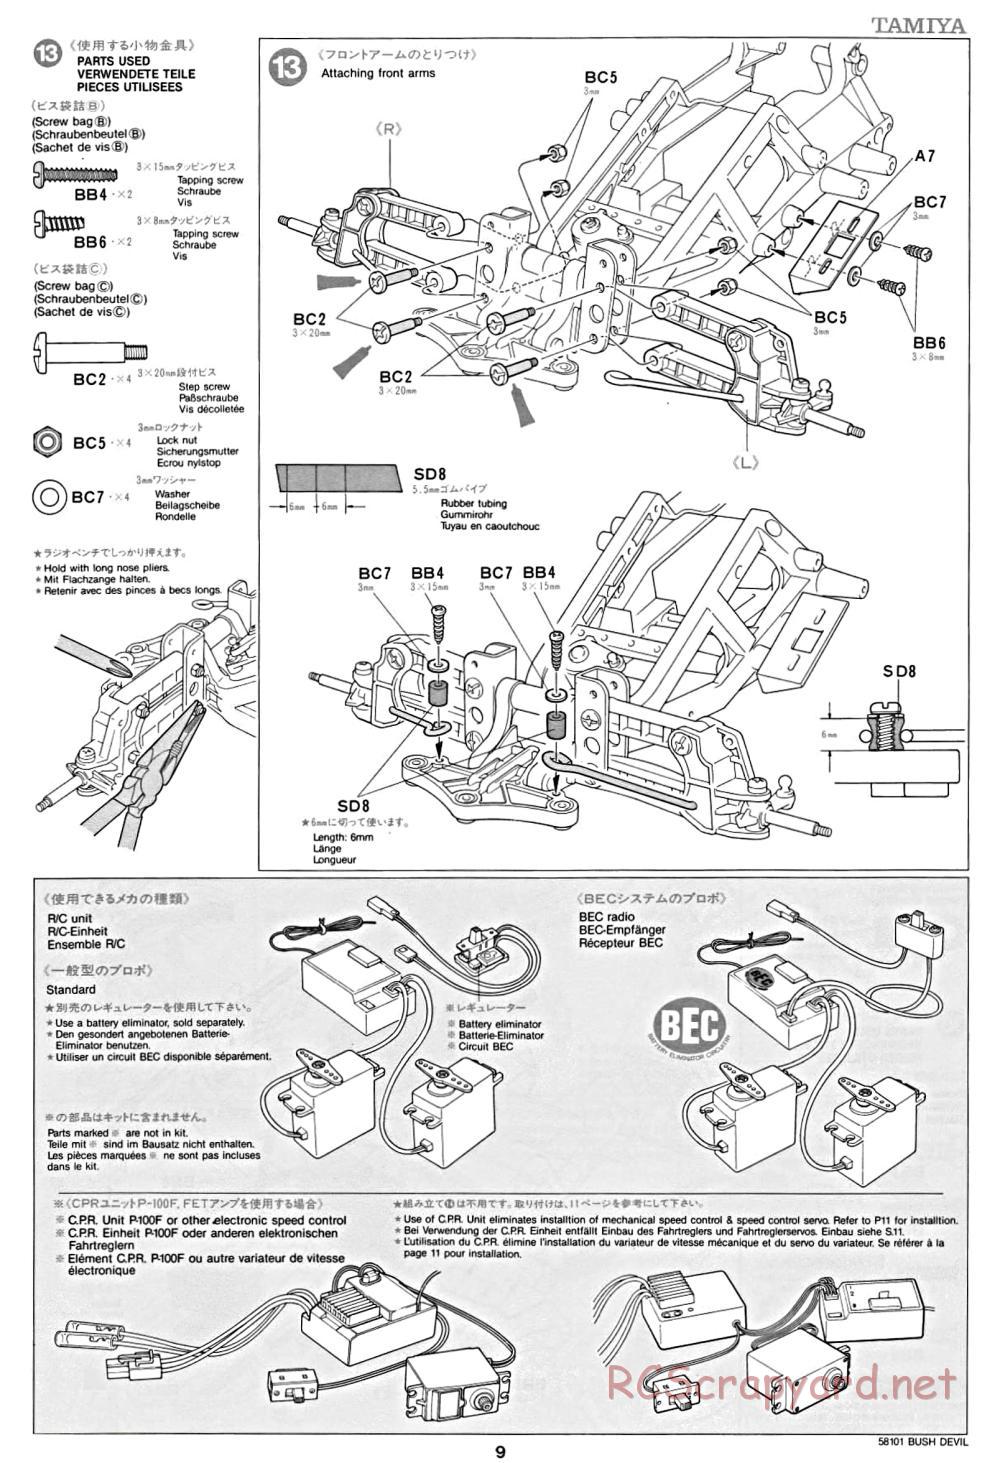 Tamiya - Bush Devil Chassis - Manual - Page 9